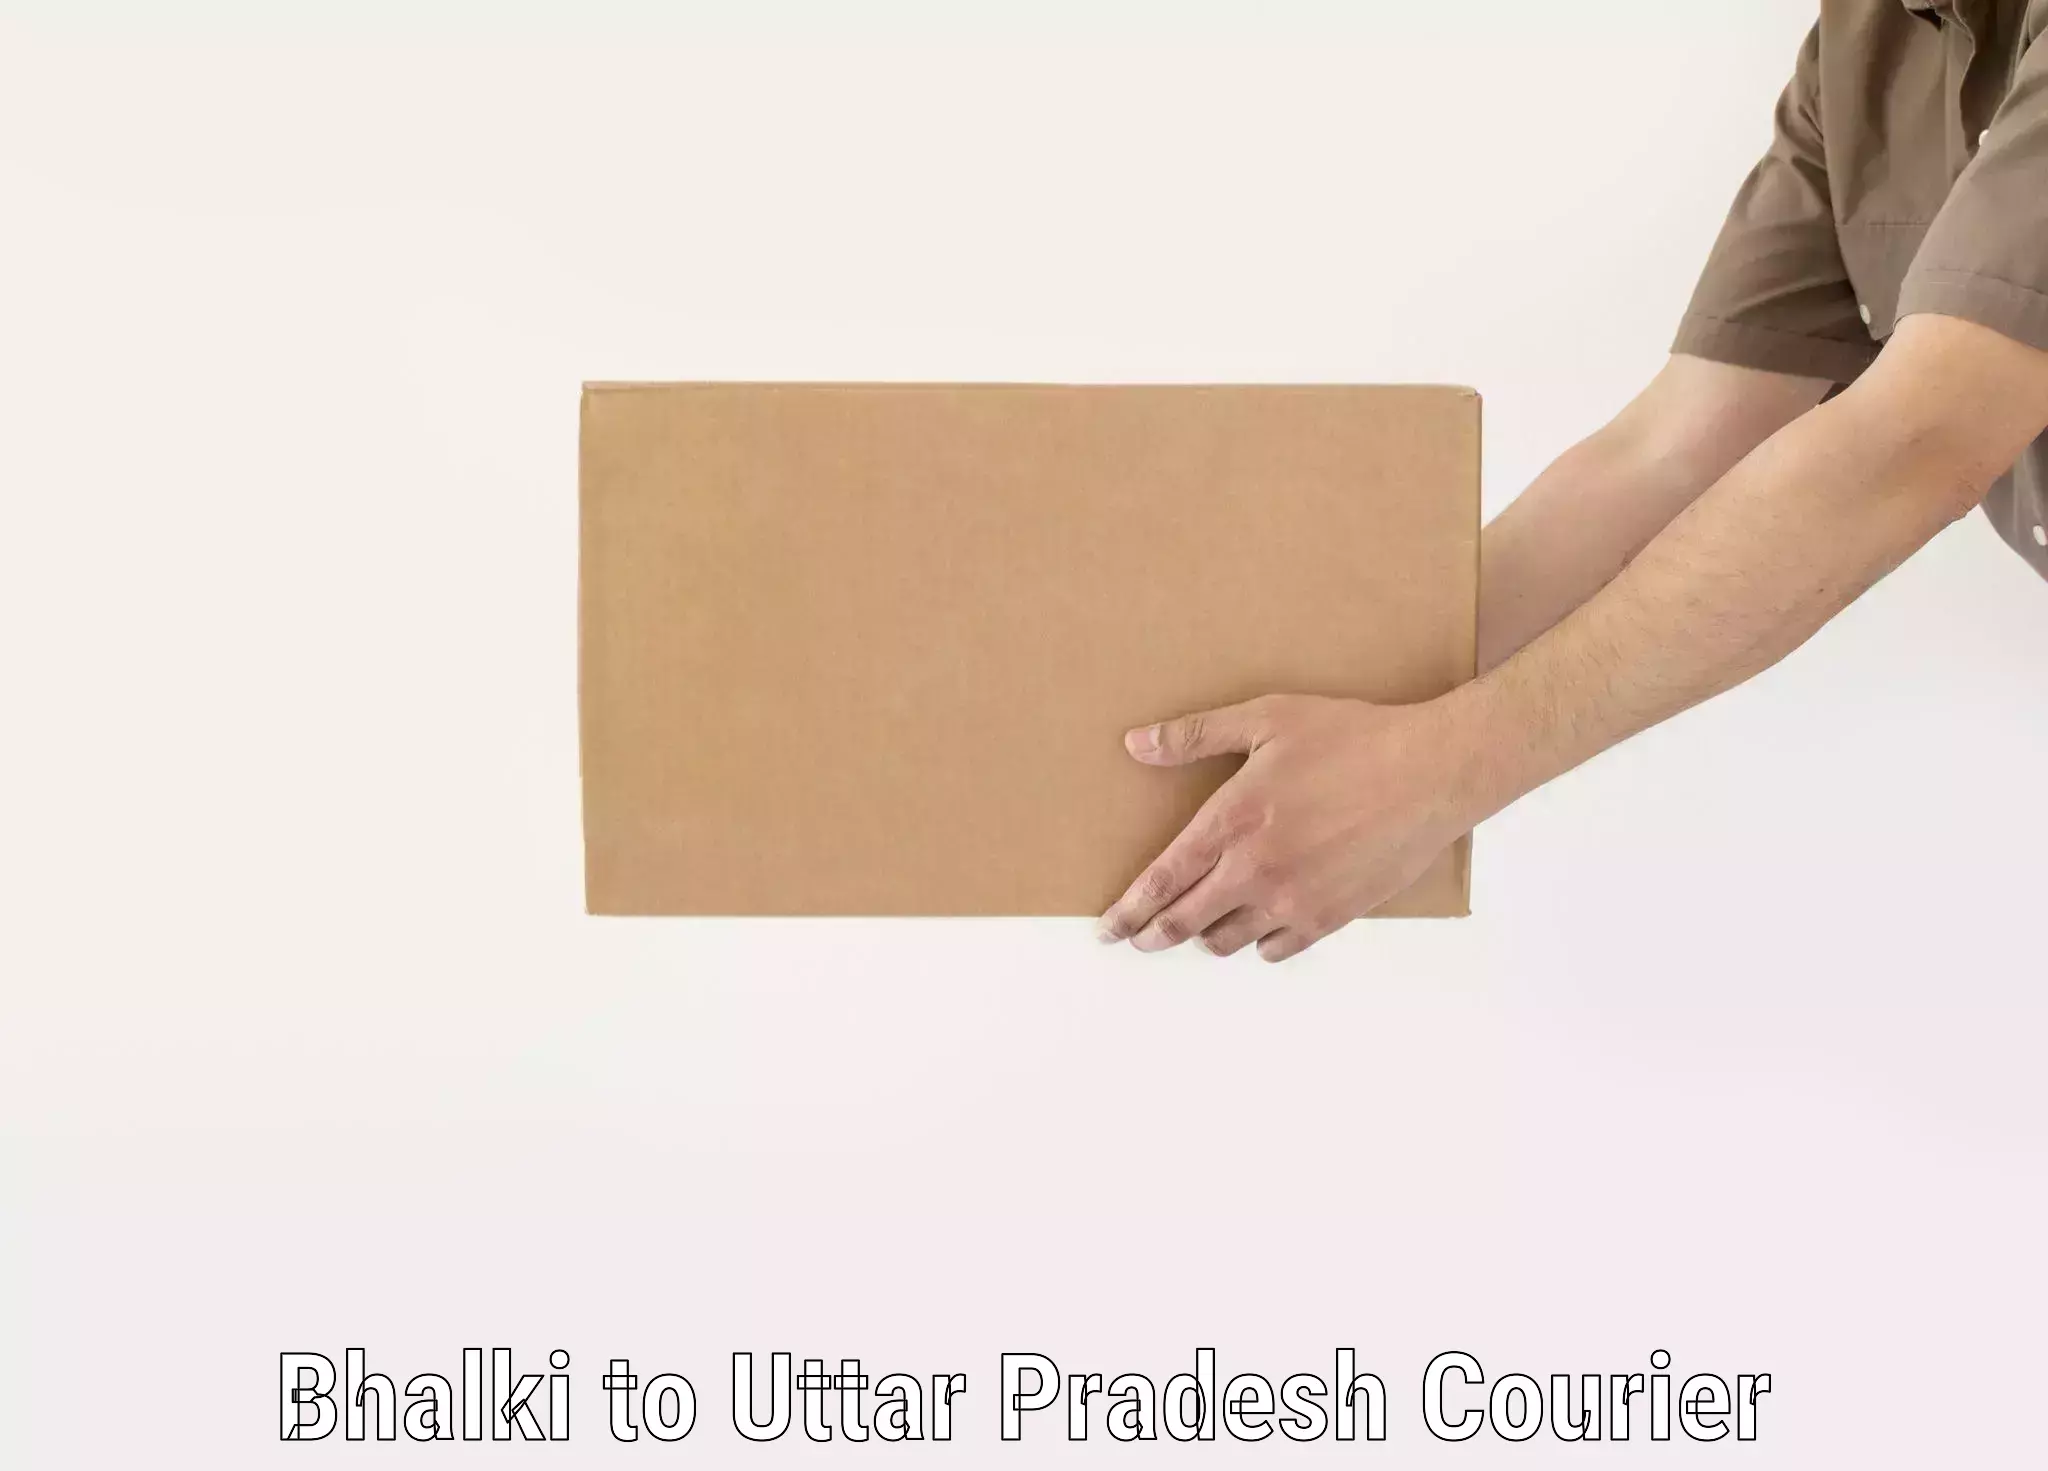 Baggage delivery technology Bhalki to Uttar Pradesh